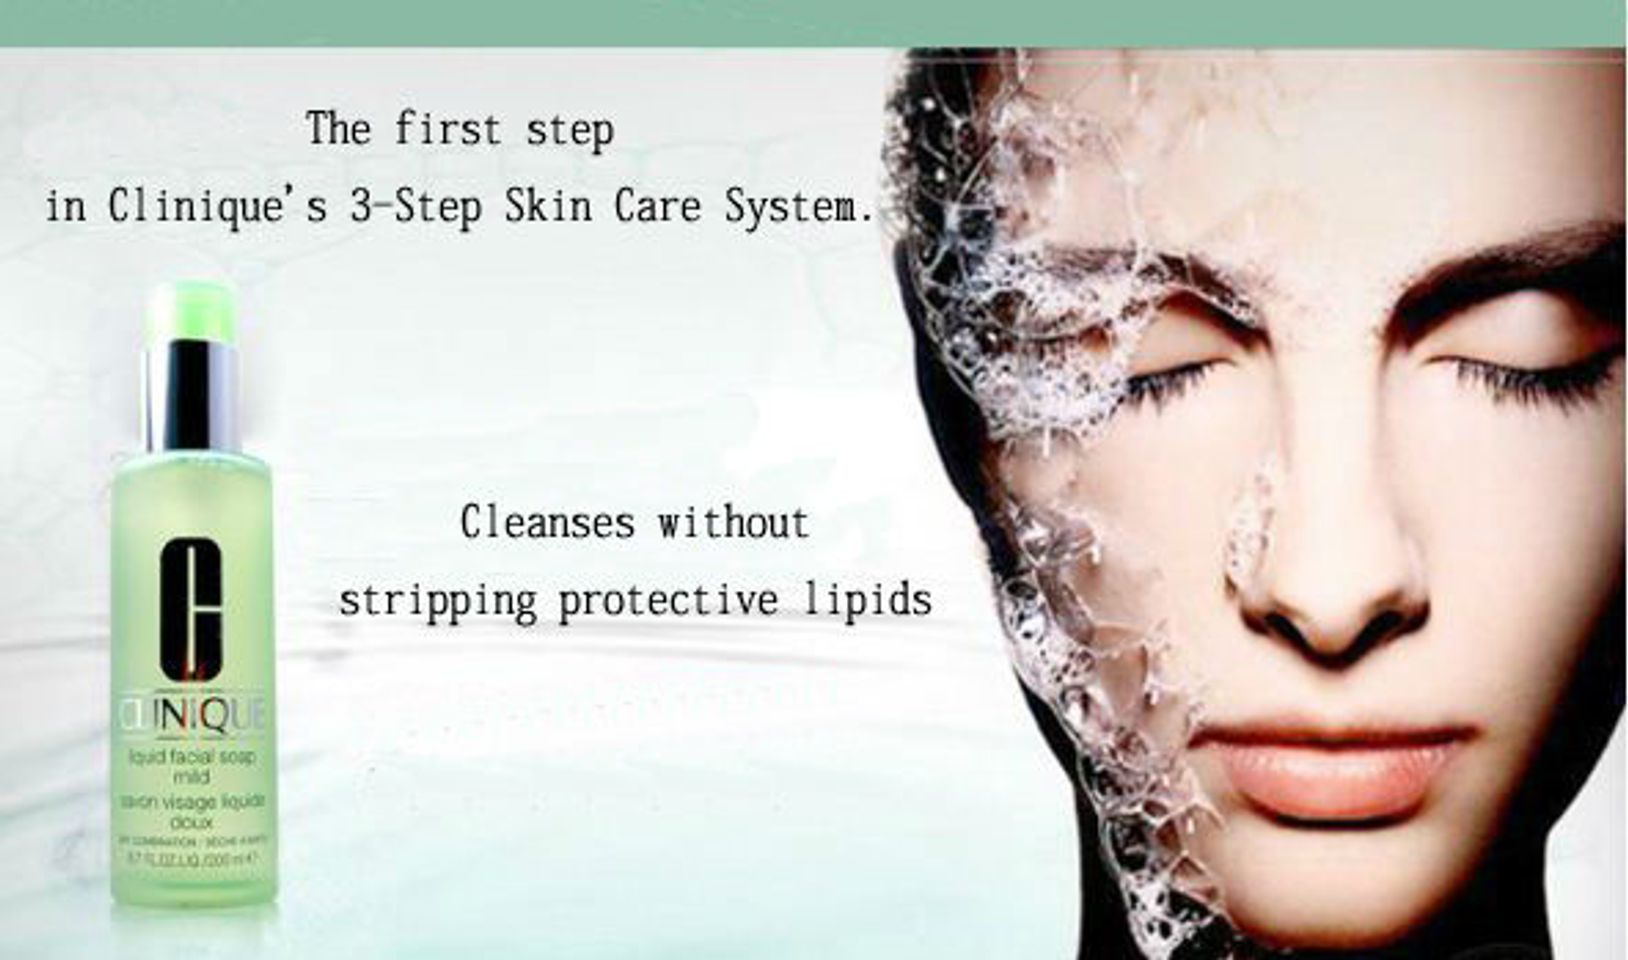 Sữa rửa mặt Clinique Liquid Facial Soap Extra-Mild là một trong 3 bước của Chăm sóc da cho da dầu nổi tiếng của Clinique được cả thế giới tin dùng